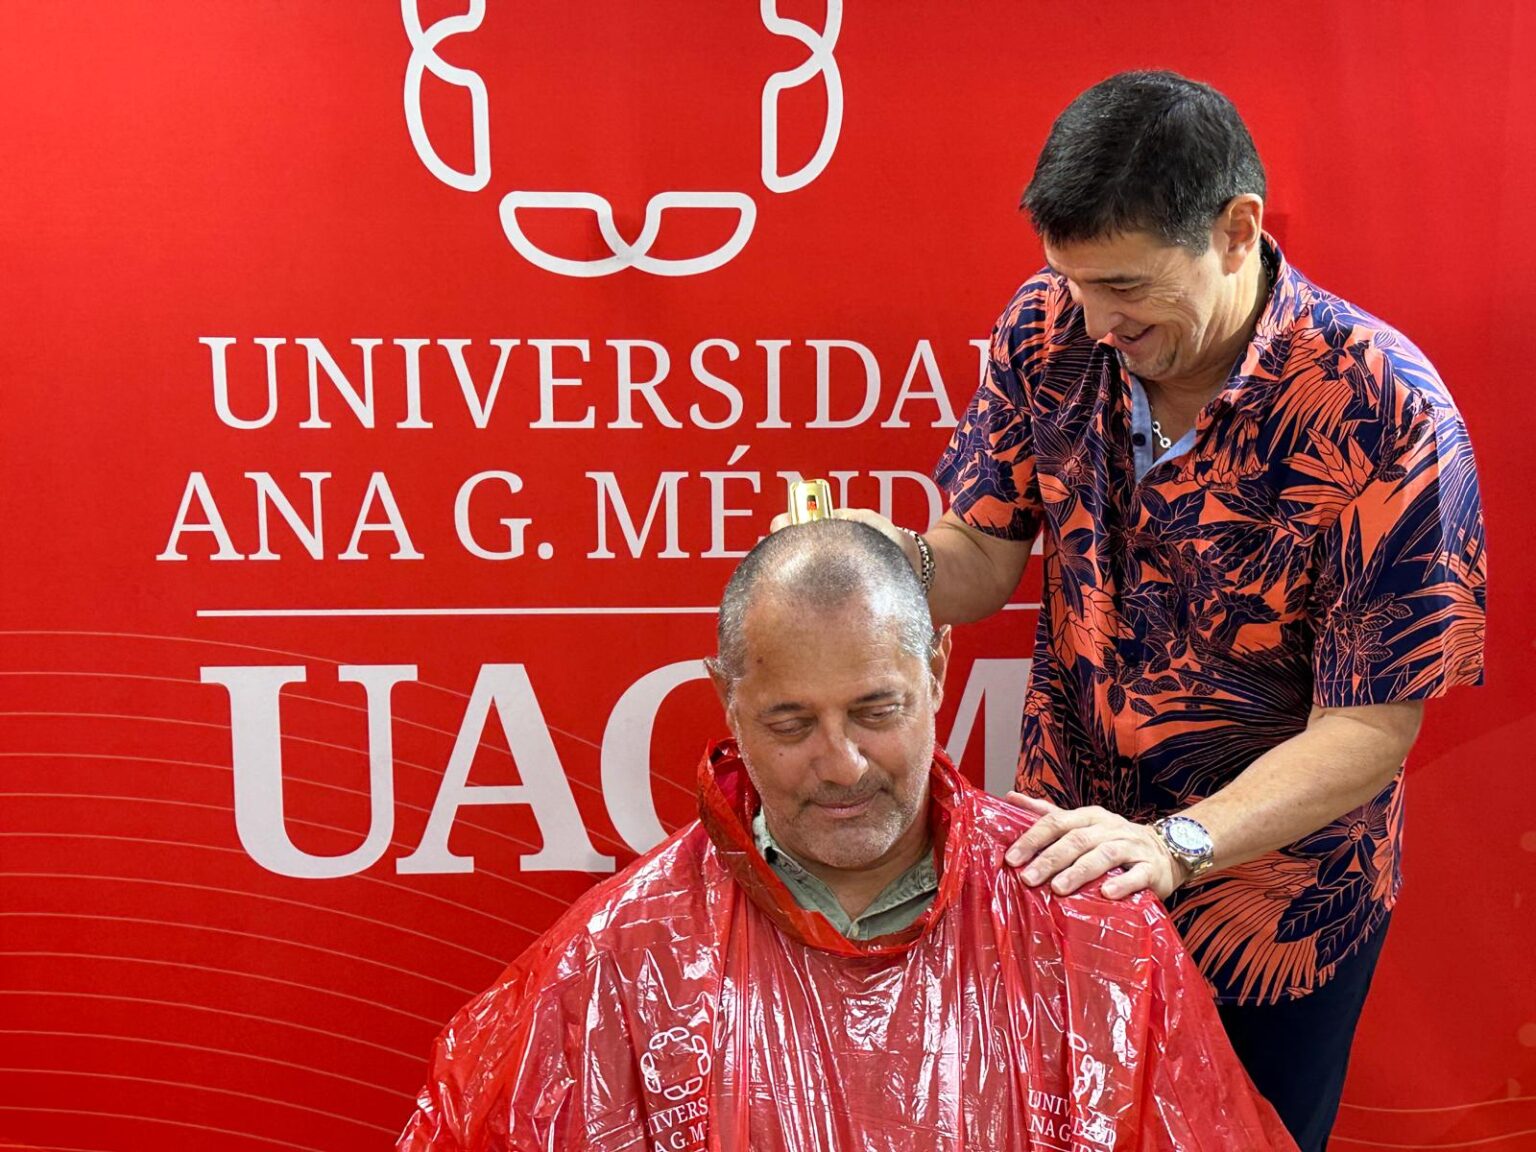 el presidente de la uagm josé méndez méndez en el proceso de rapar el cabello a su director atlético edgar díaz. (lai)